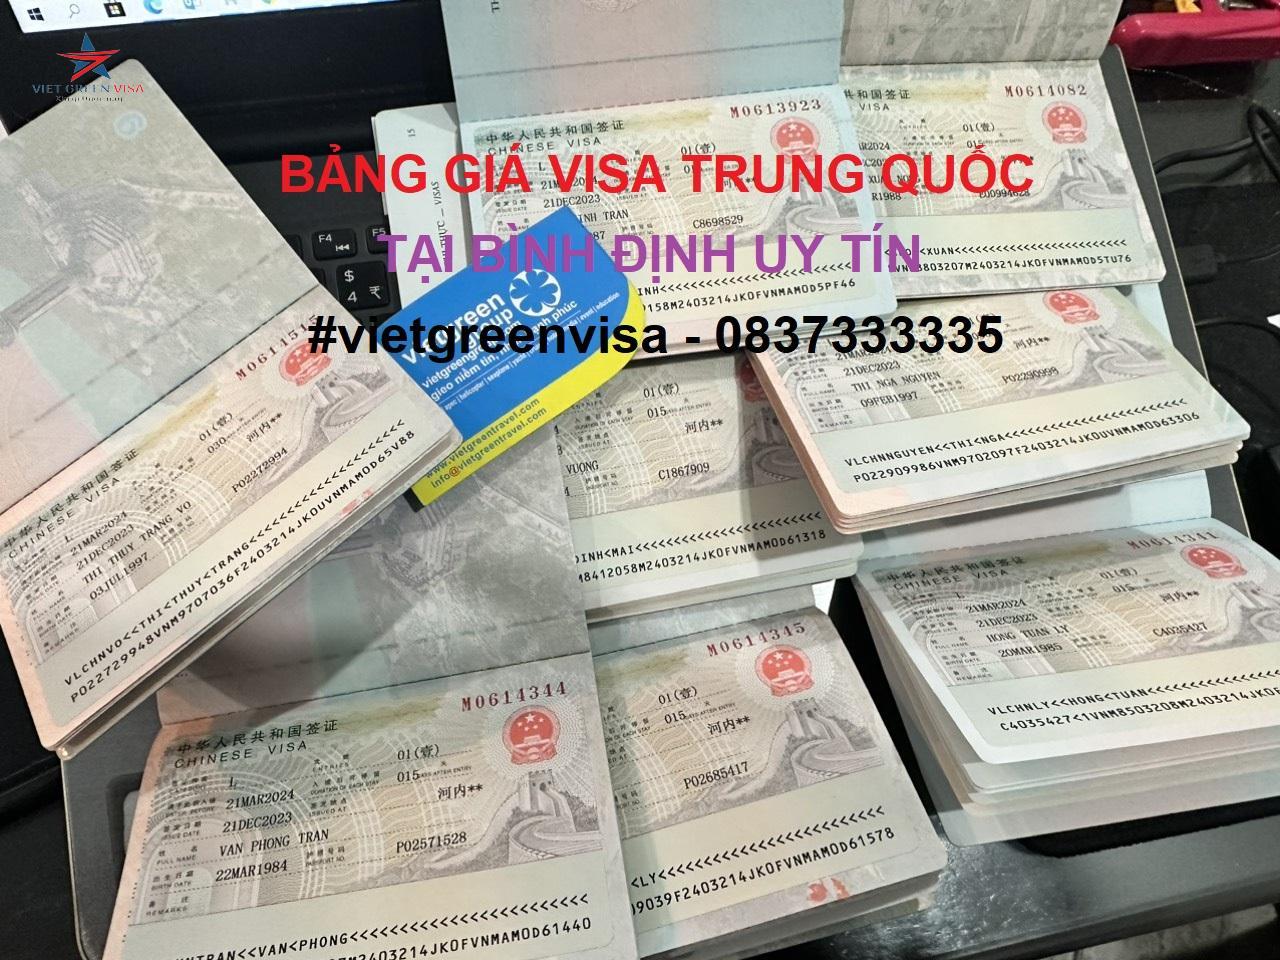 Dịch vụ xin visa Trung Quốc tại Bình Định uy tín